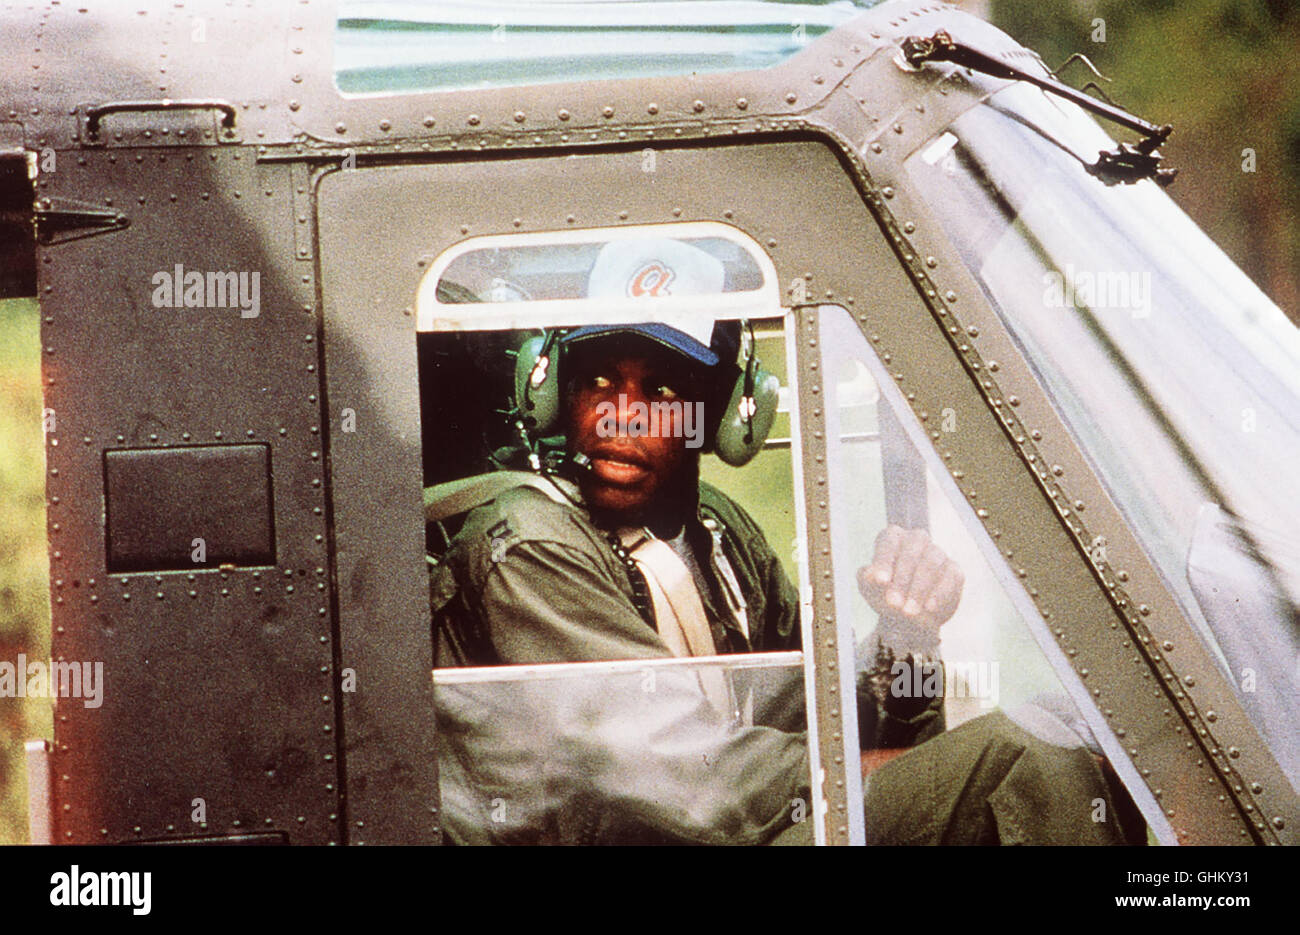 BAT 21 - Mitten im Feuer Süd-Vietnam 1968: Bei einem Aufklärungsflug wird Lieutenant Colonel Iceal Hambleton abgeschossen - er muß mitten im feindlichen Gebiet abspringen. Major Dennis Clark (DANNY GLOVER), Pilot einer kleinen Kundschafter-Propellermaschine, soll nun Hambleton ausfindig machen. Regie: Peter Markle aka. BAT 21 Stock Photo